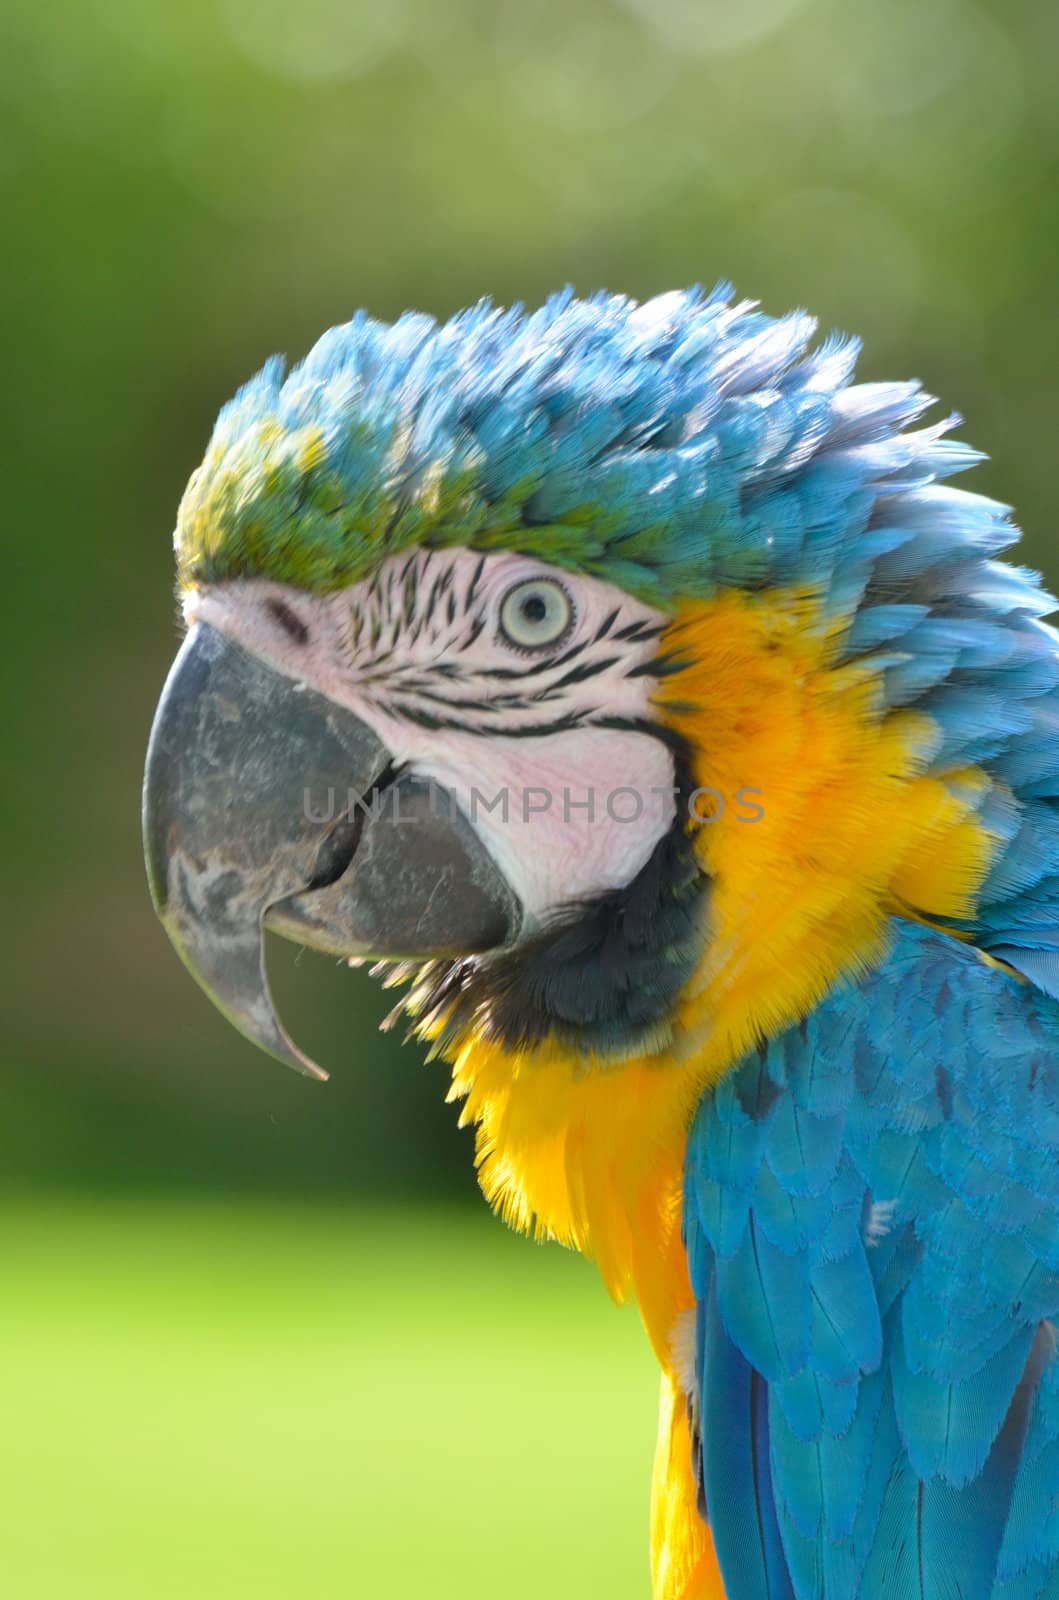 Parrot head portrait by pauws99